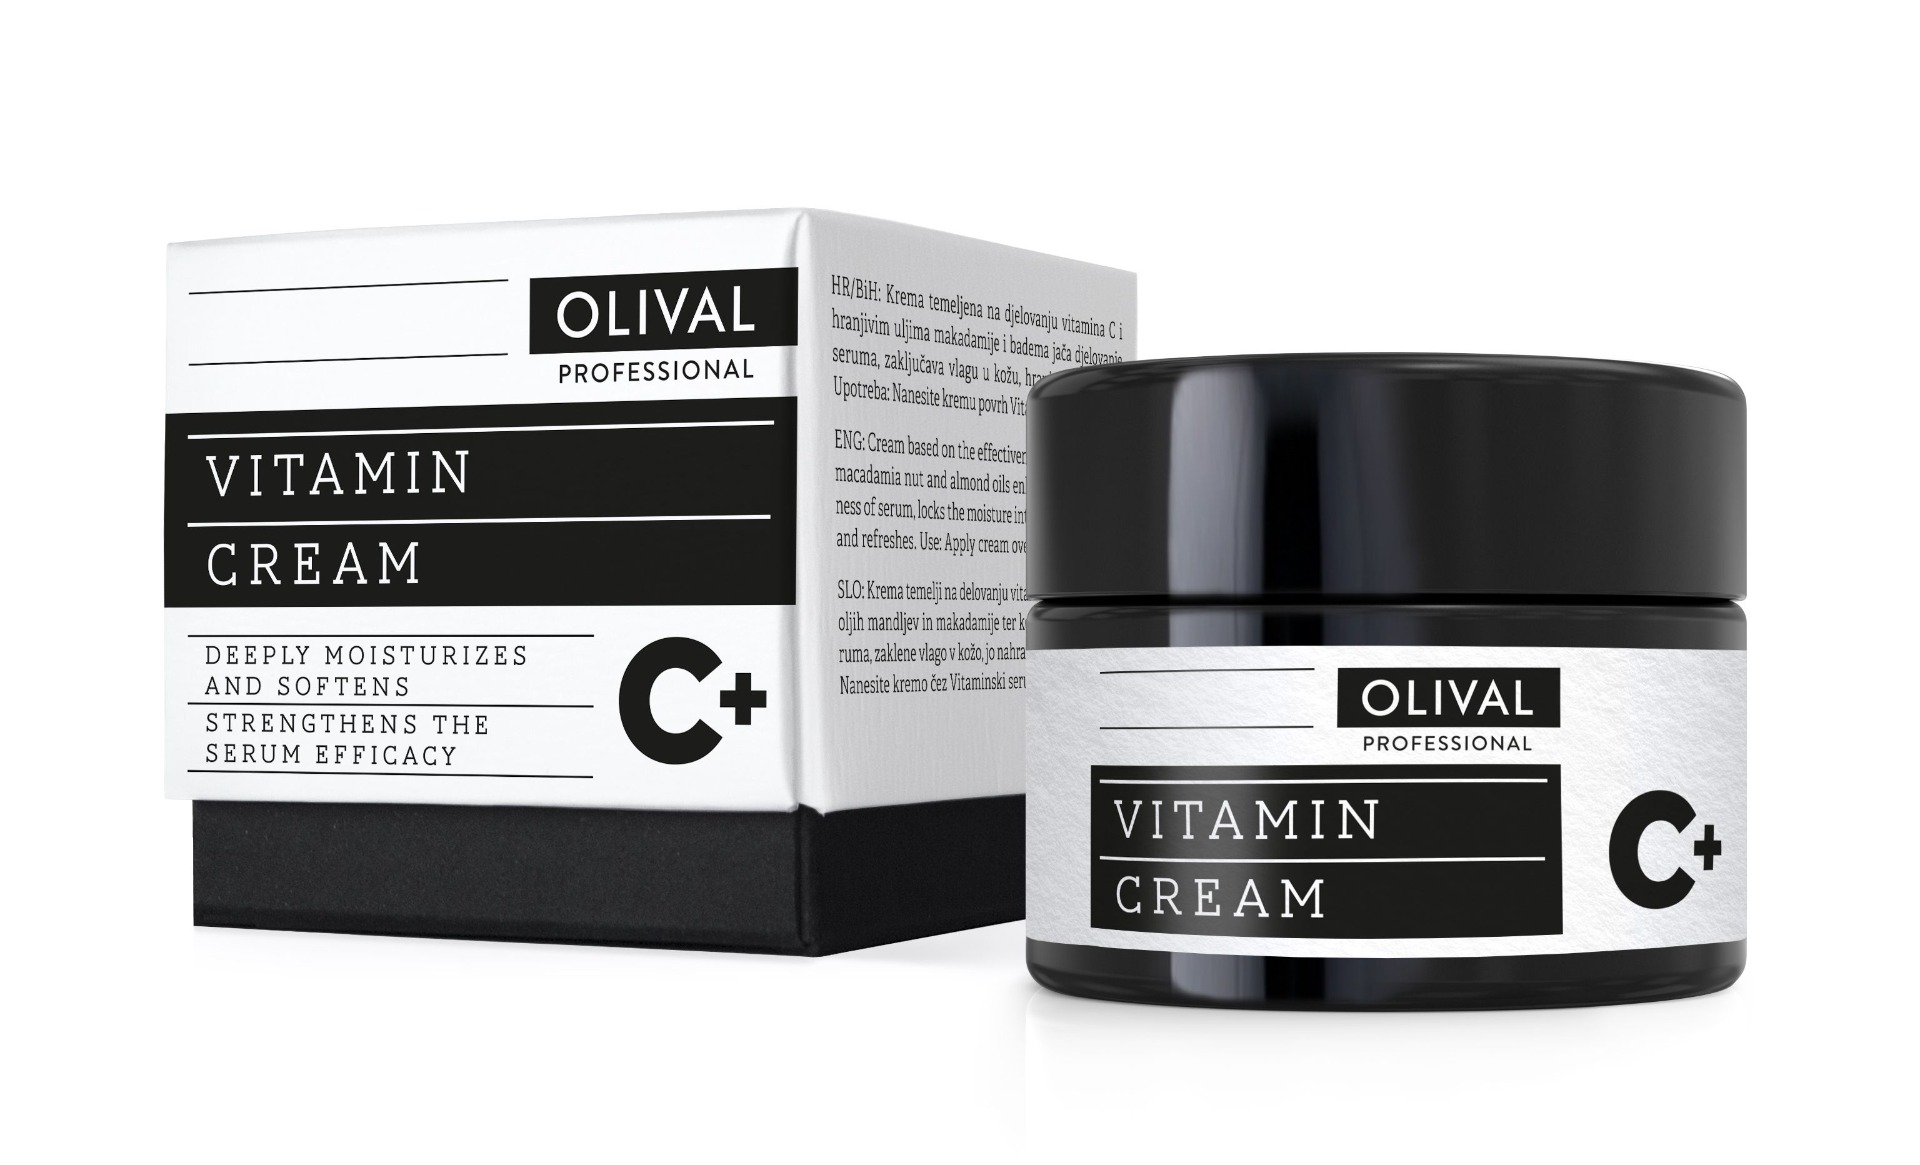 Olival Professional Vitamine Cream C+ 50 ml Olival